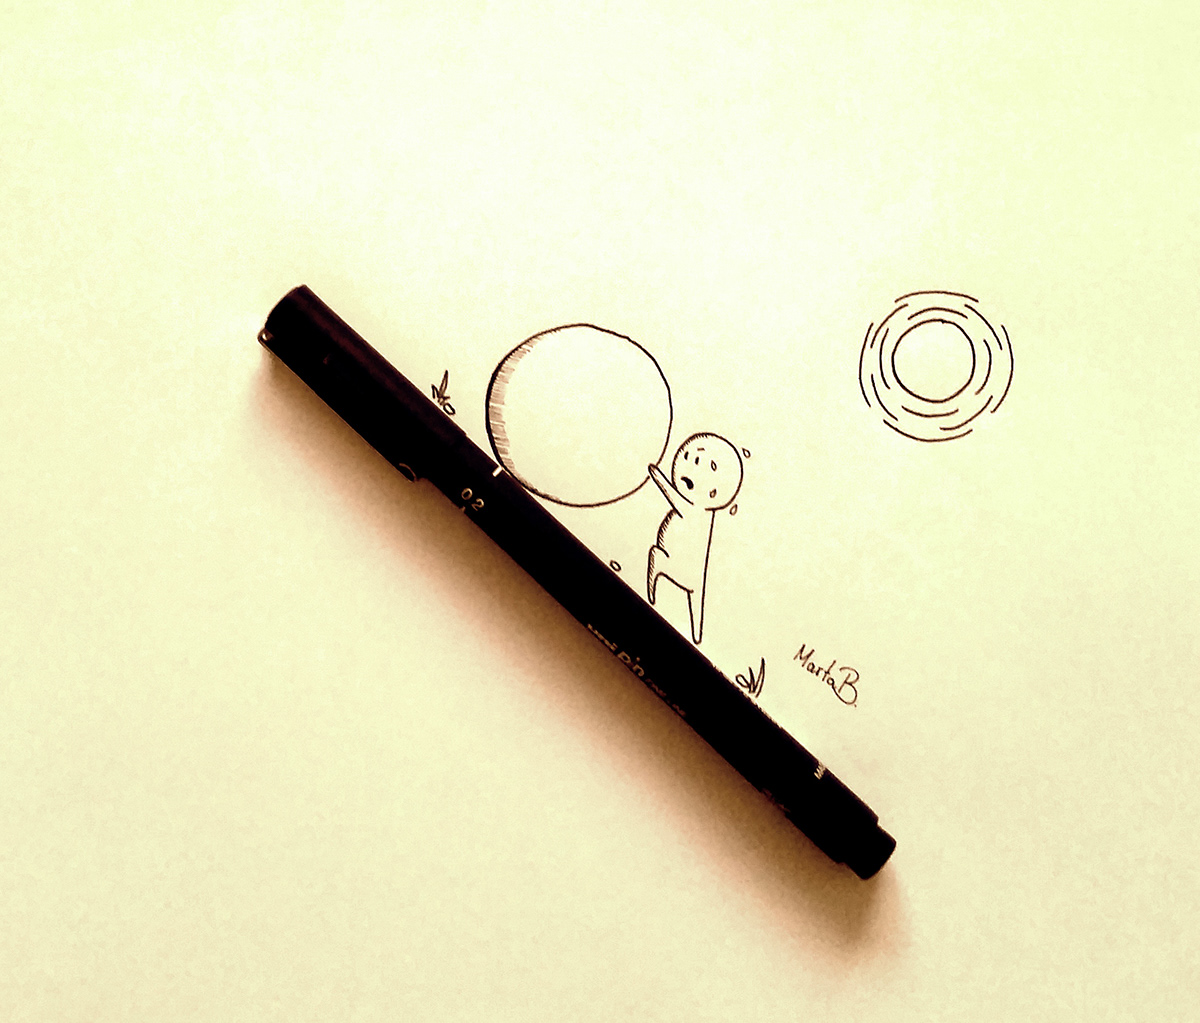 doodle pen fineliner drawings Cartoons doodling Fun